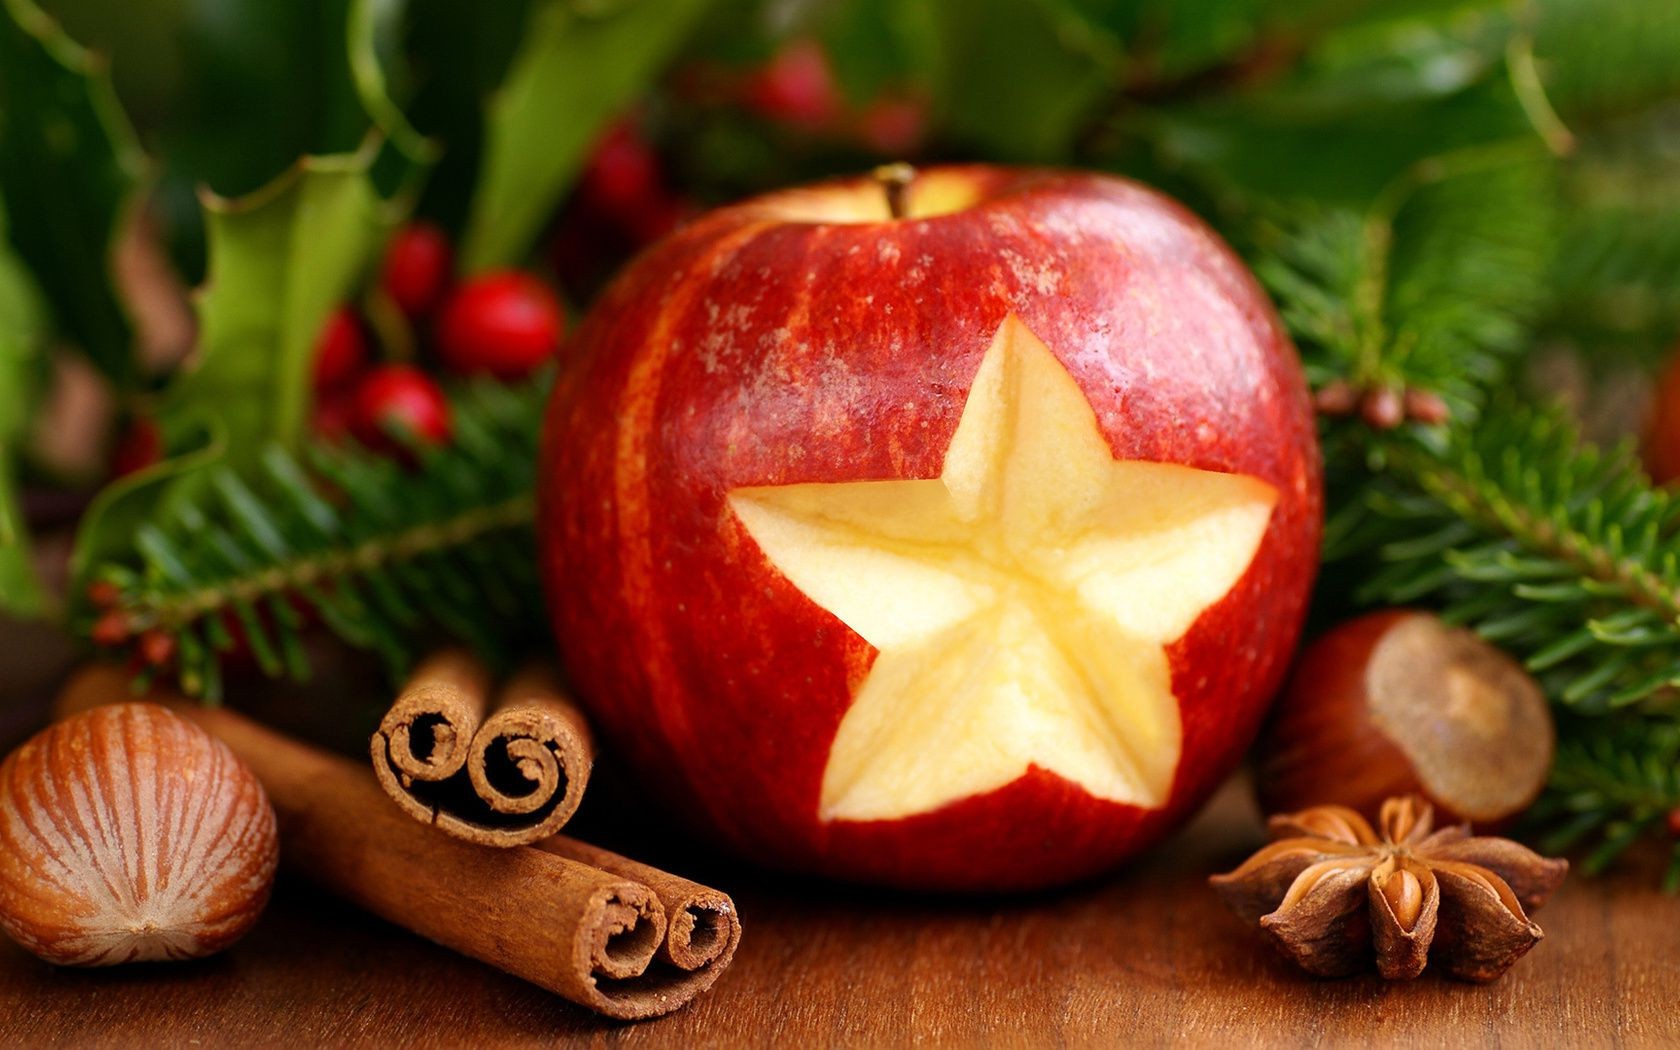 новый год рождество зима фрукты появлением еда корица украшения кондитерское изделие яблоко сладкий сезон праздник